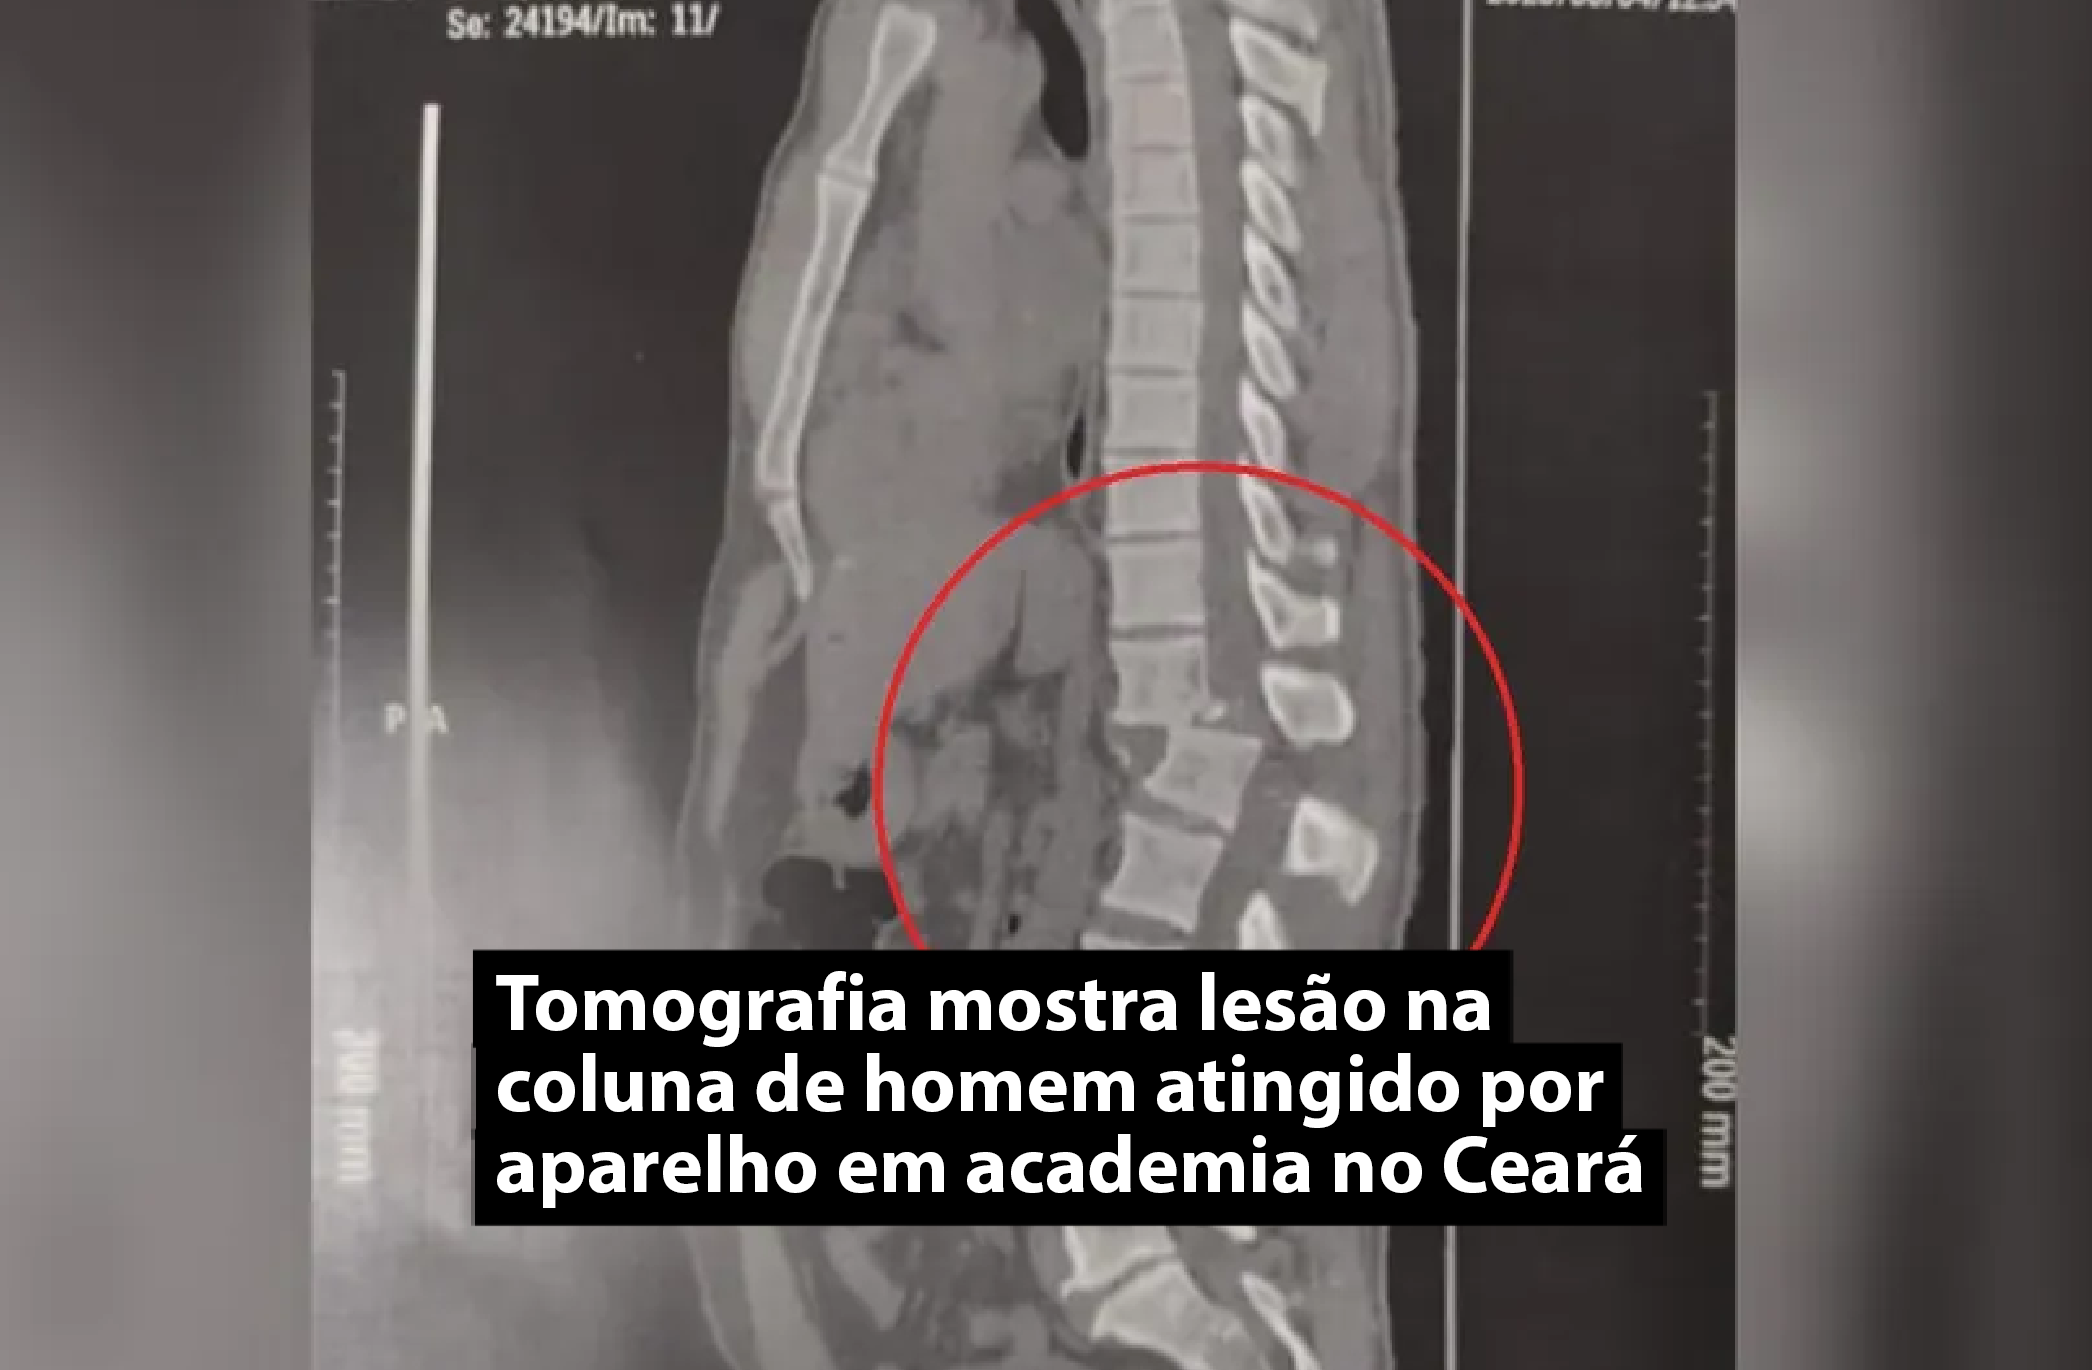 Tomografia mostra lesão na coluna de homem atingido por aparelho em academia no Ceará